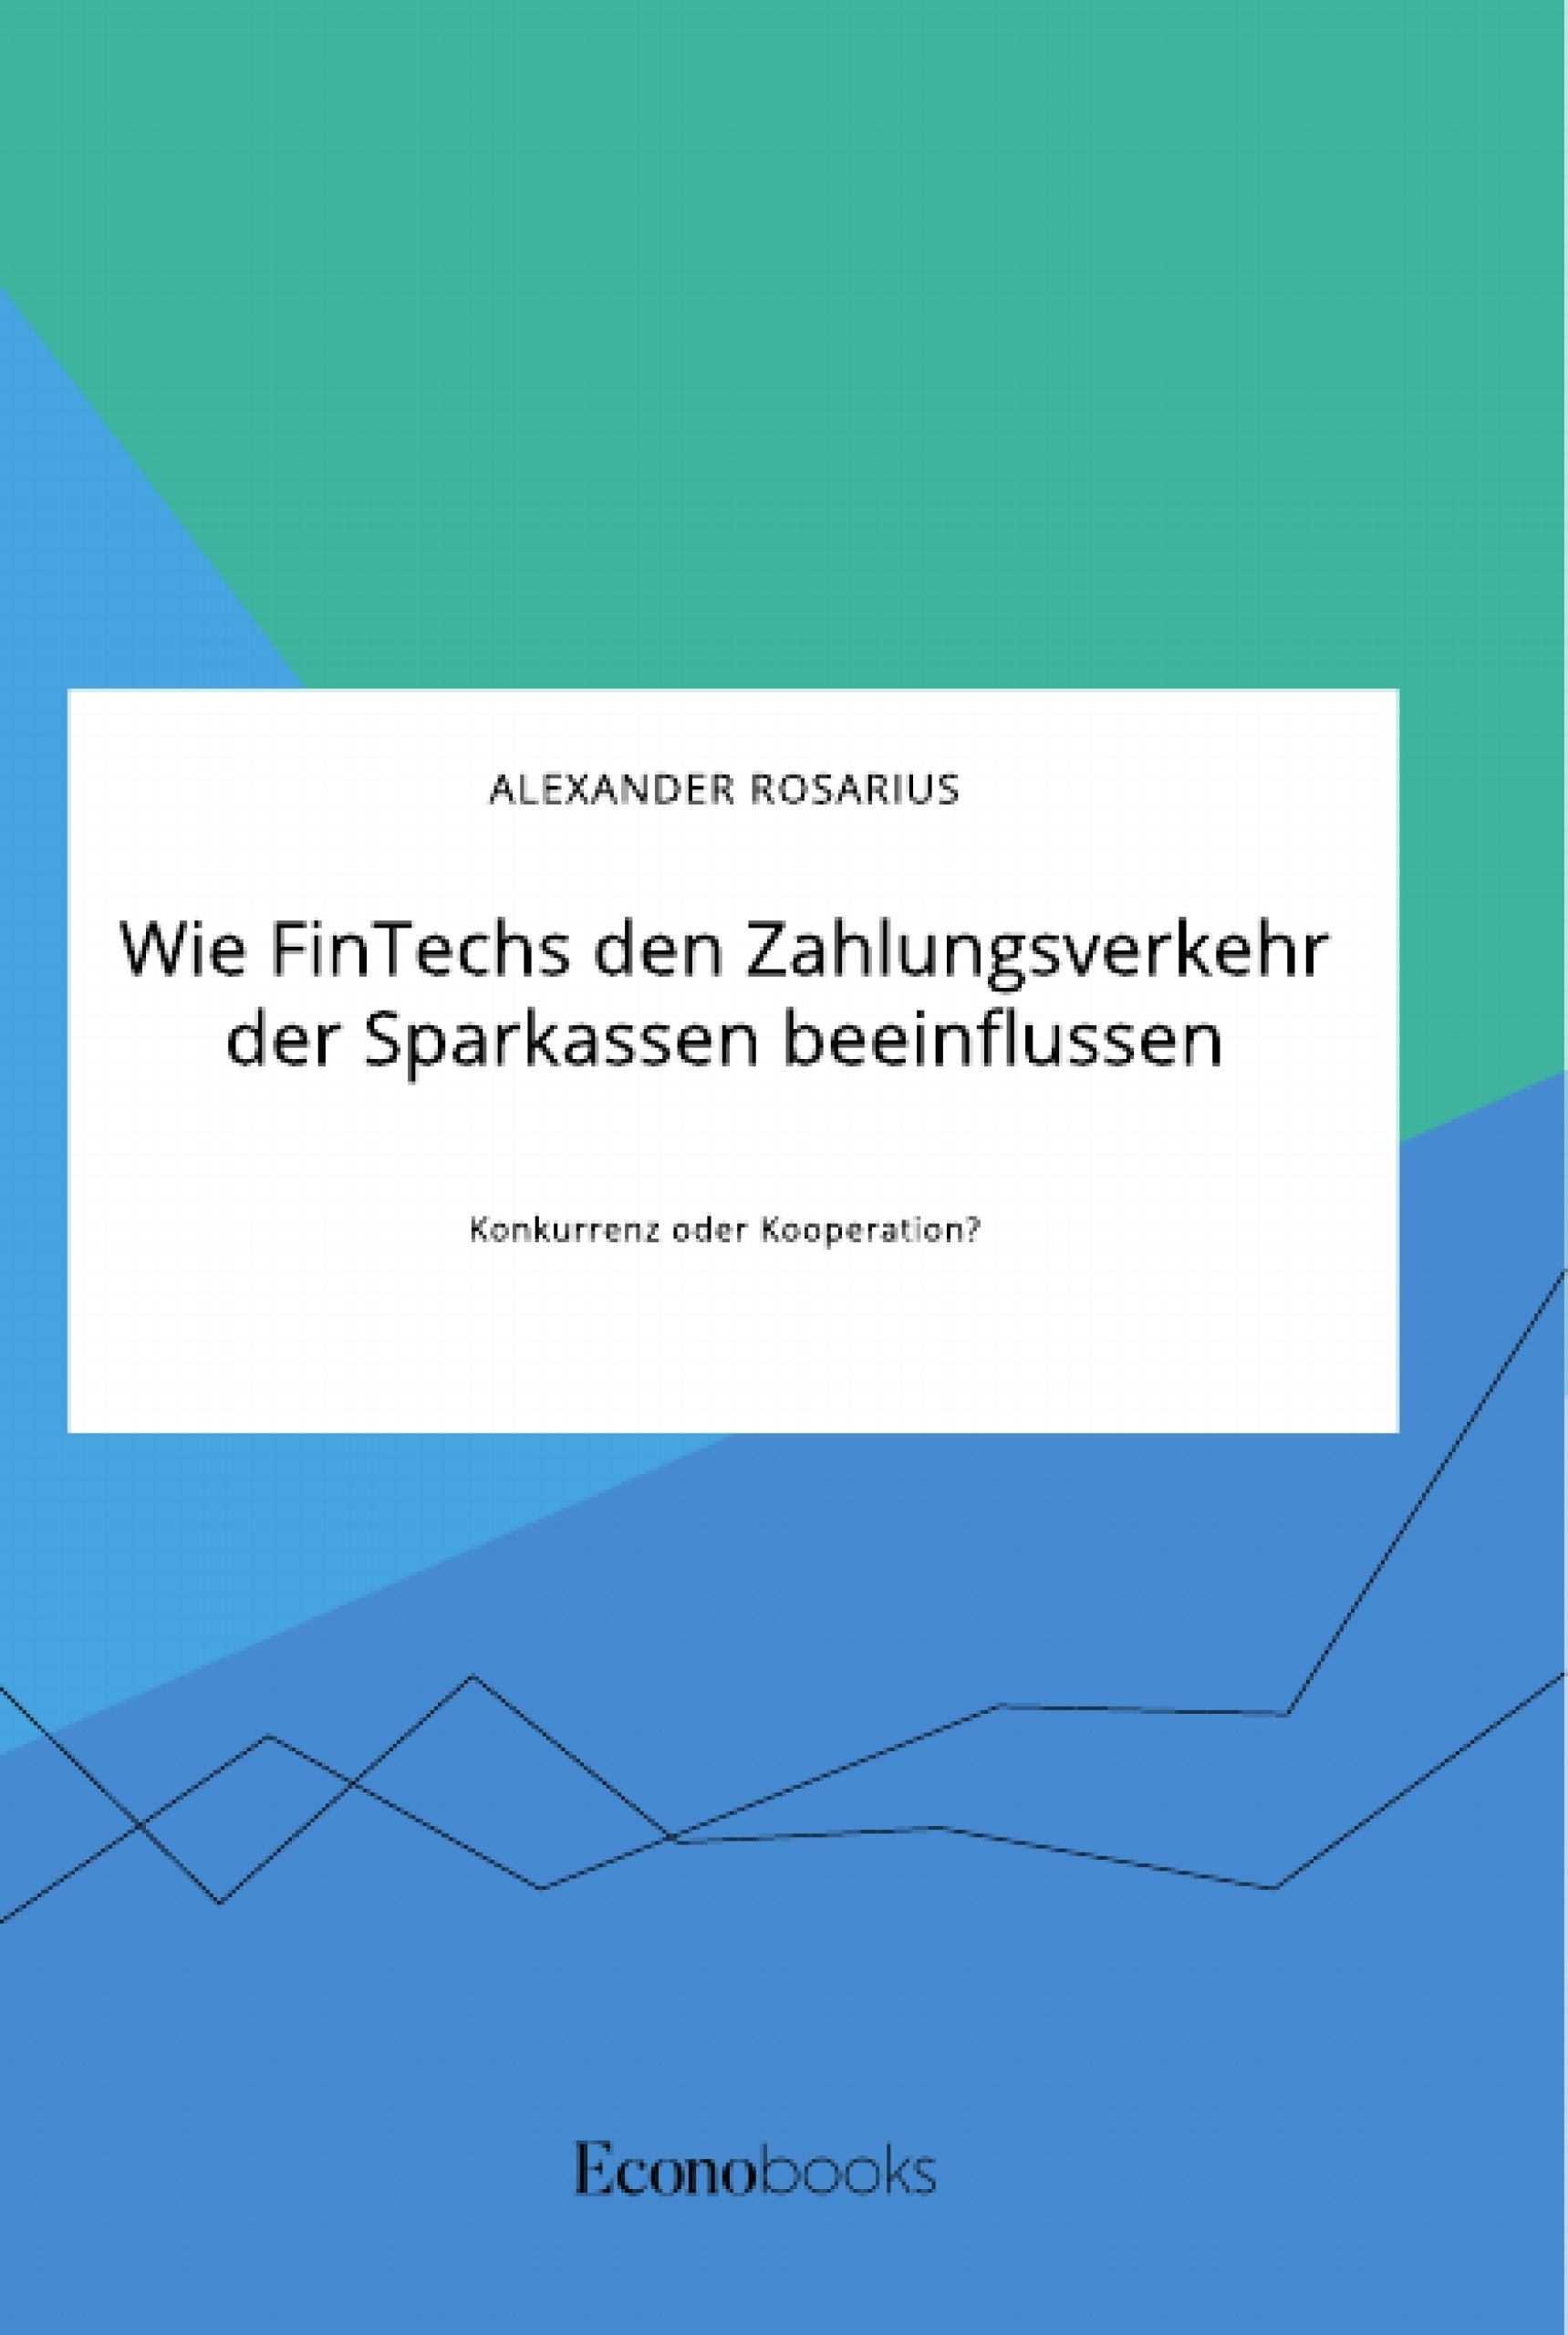 Title: Wie FinTechs den Zahlungsverkehr der Sparkassen beeinflussen. Konkurrenz oder Kooperation?